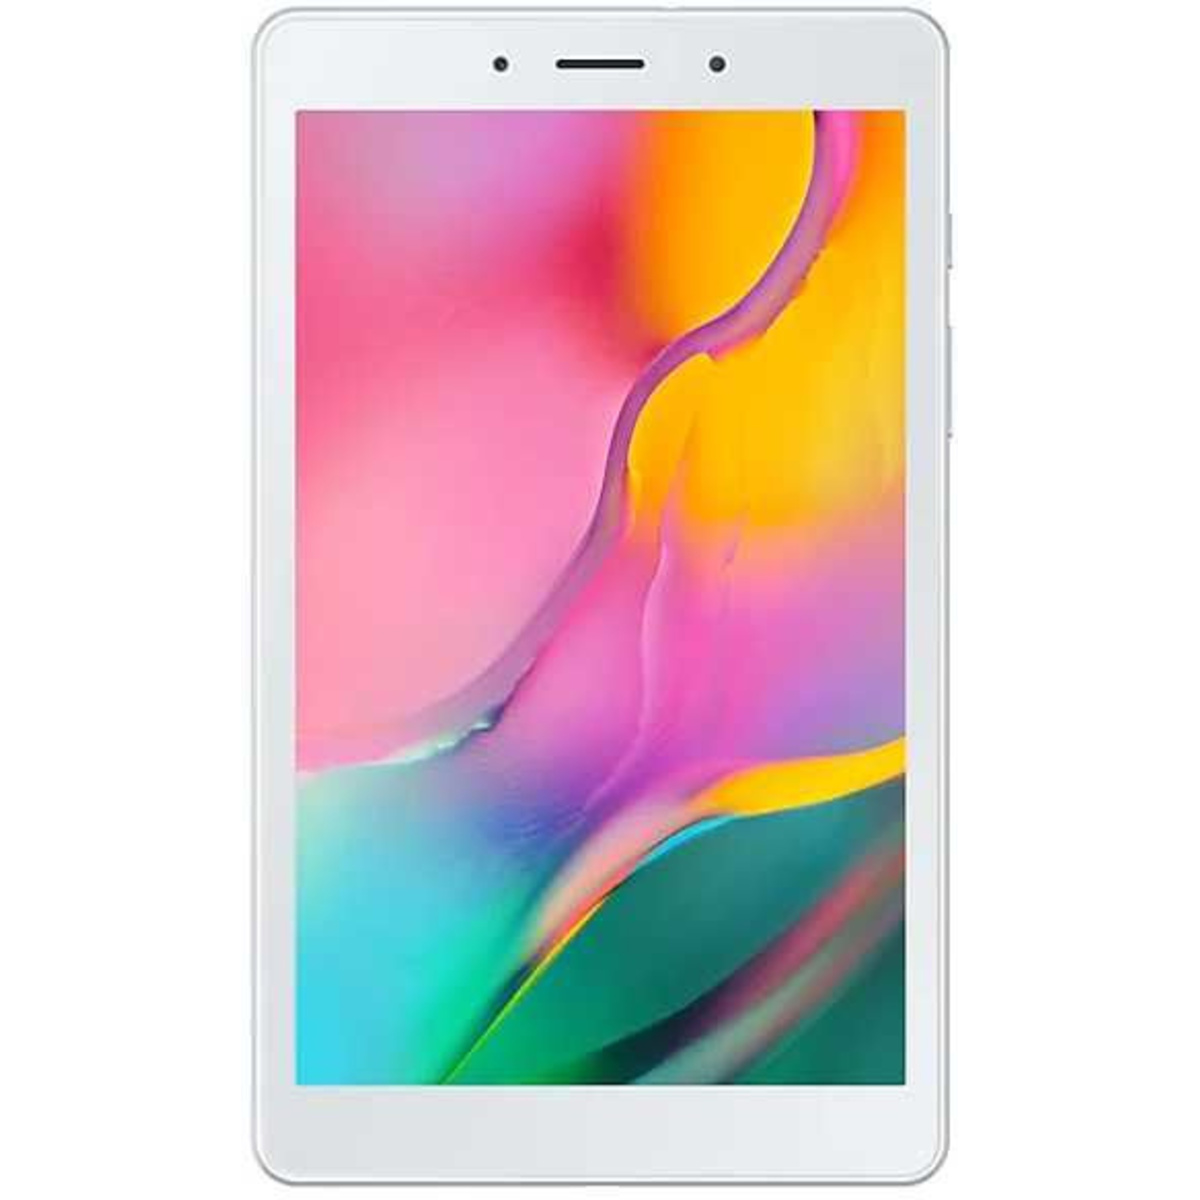 Планшет Samsung Galaxy Tab A 8.0 (2019) SM-T290 Wi-Fi 32Gb (Цвет: Silver)